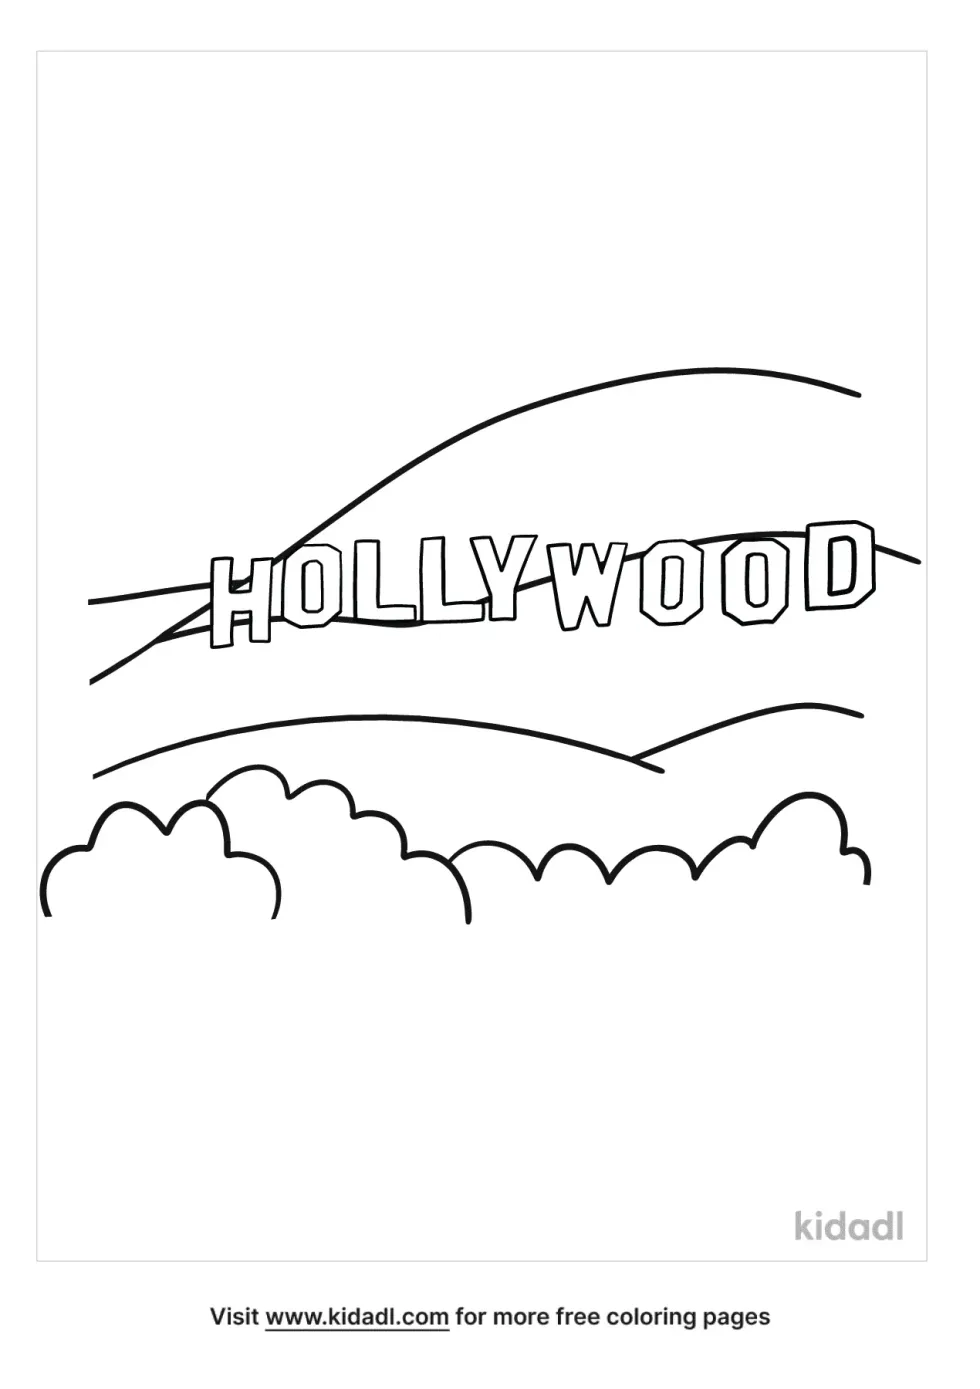 Hollywood Skyline